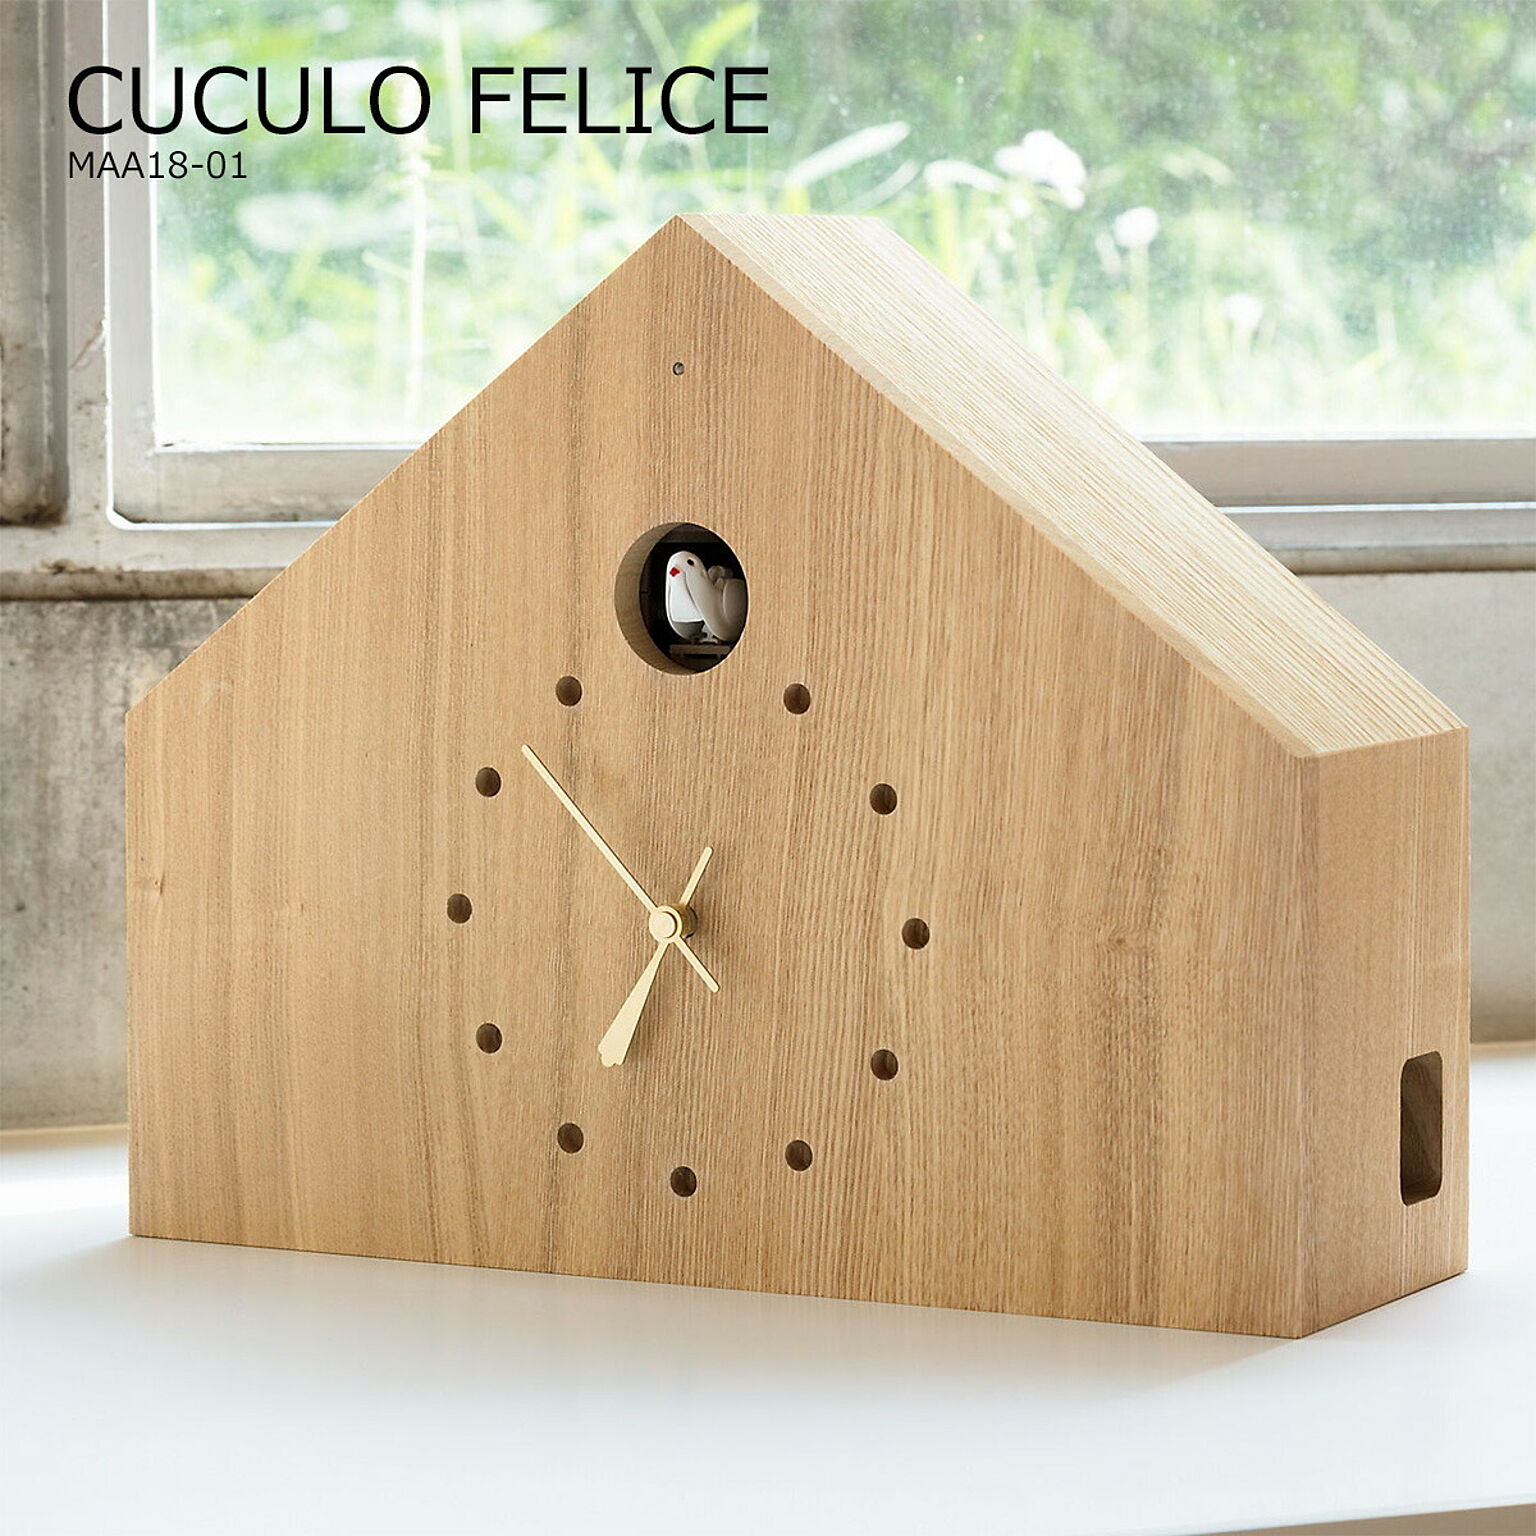 壁掛け時計 おしゃれ 時計 壁掛け 北欧 鳩時計 ハト時計 北欧 掛け時計 カッコー時計 CUCULO FELICE ククロ フェリーチェ MAA18-01 置き時計 木製 インテリア